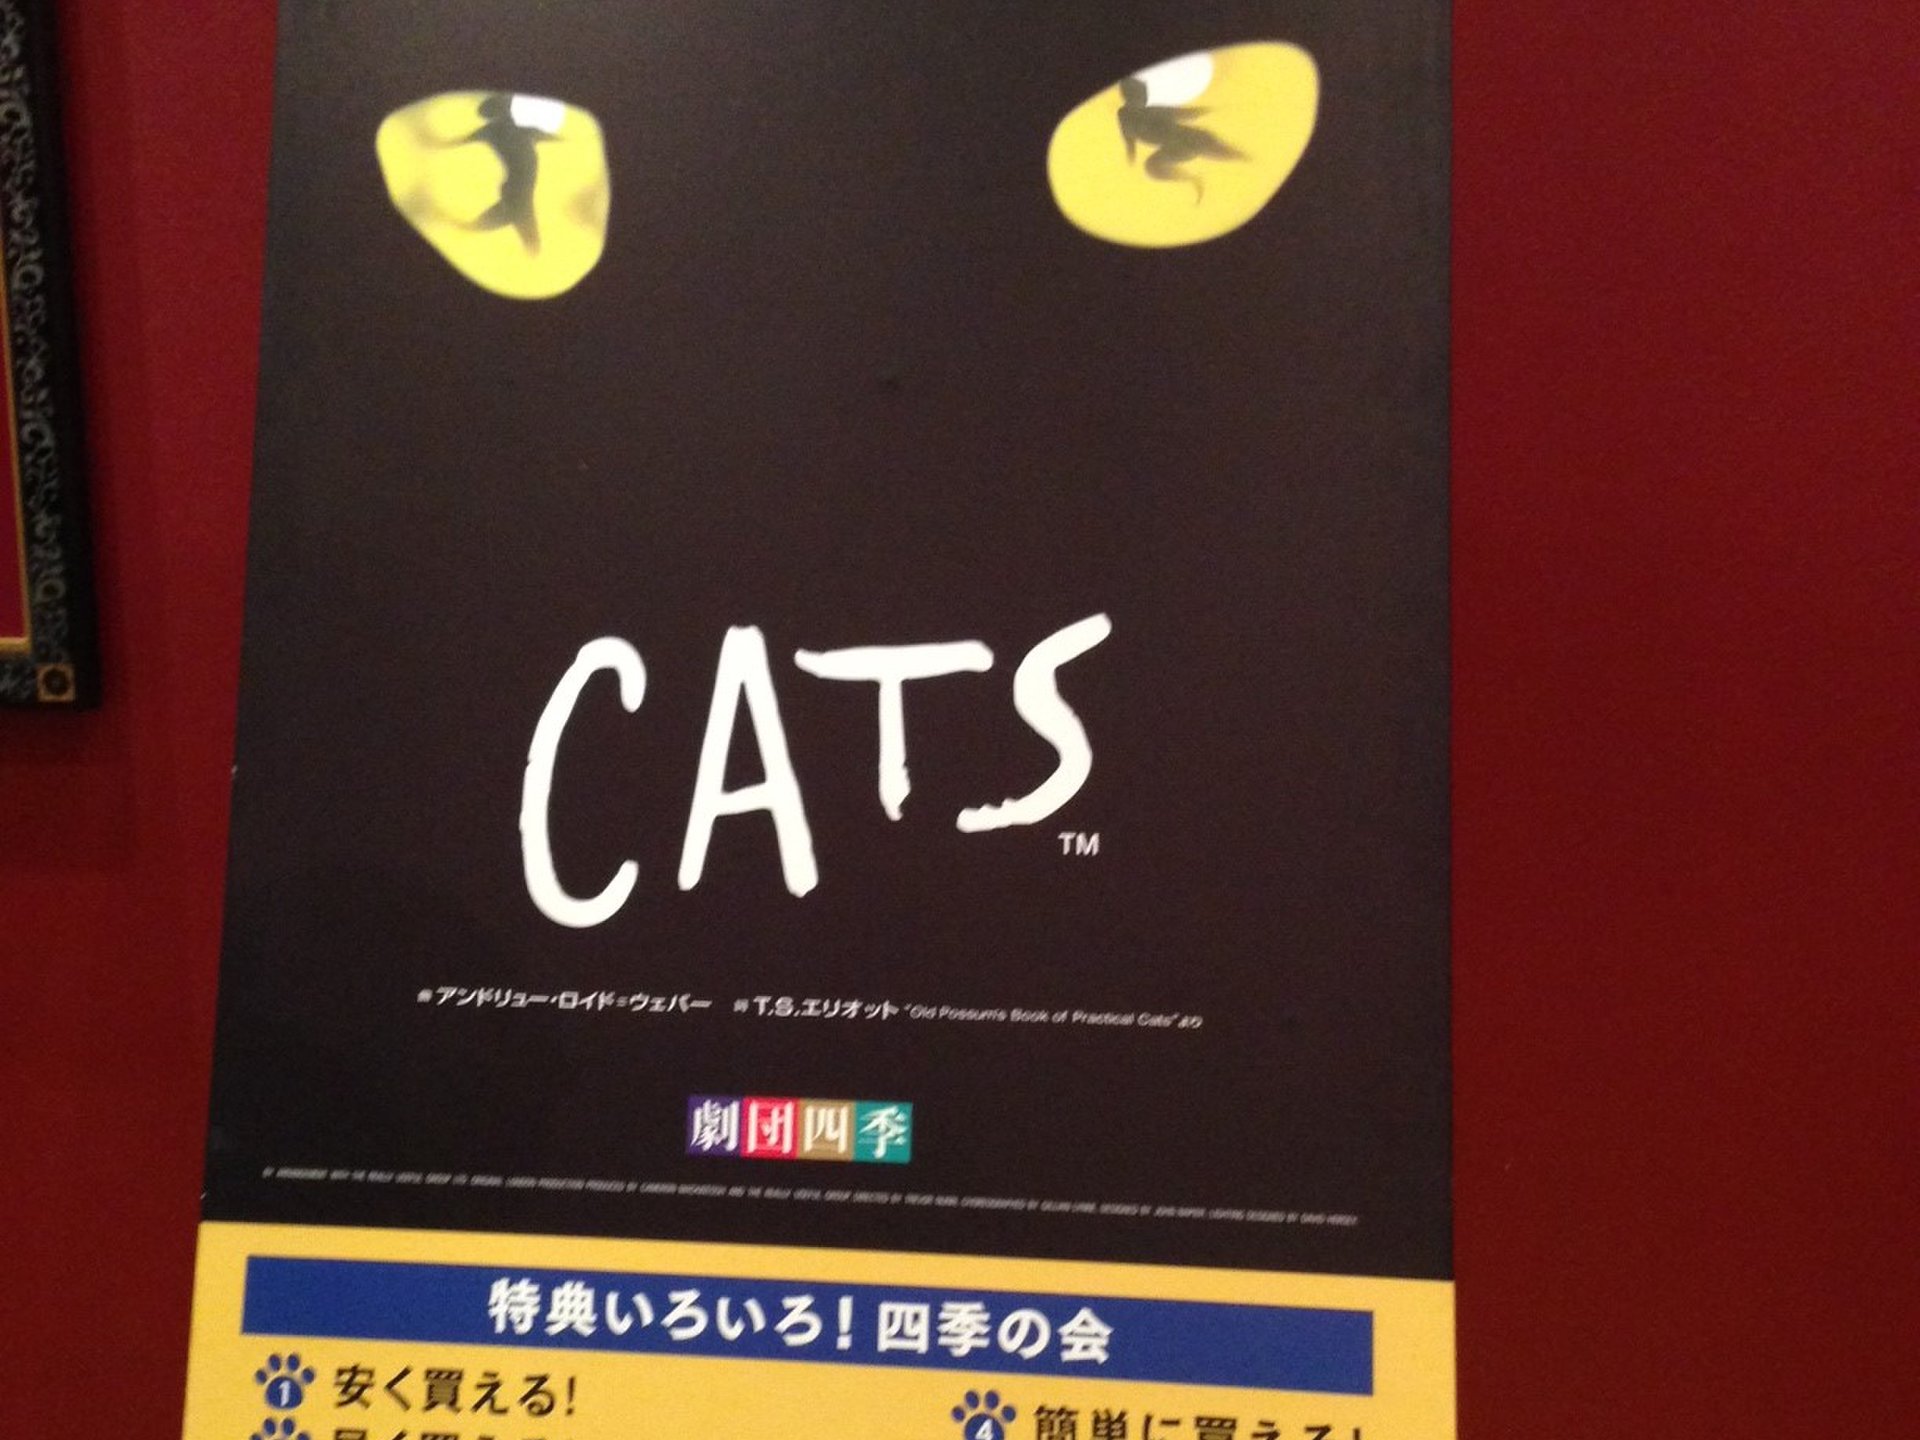 【札幌】劇団四季「CATS」鑑賞♪ランチは近くのオシャレ隠れ家イタリアン「YOSHIE」がおすすめ☆